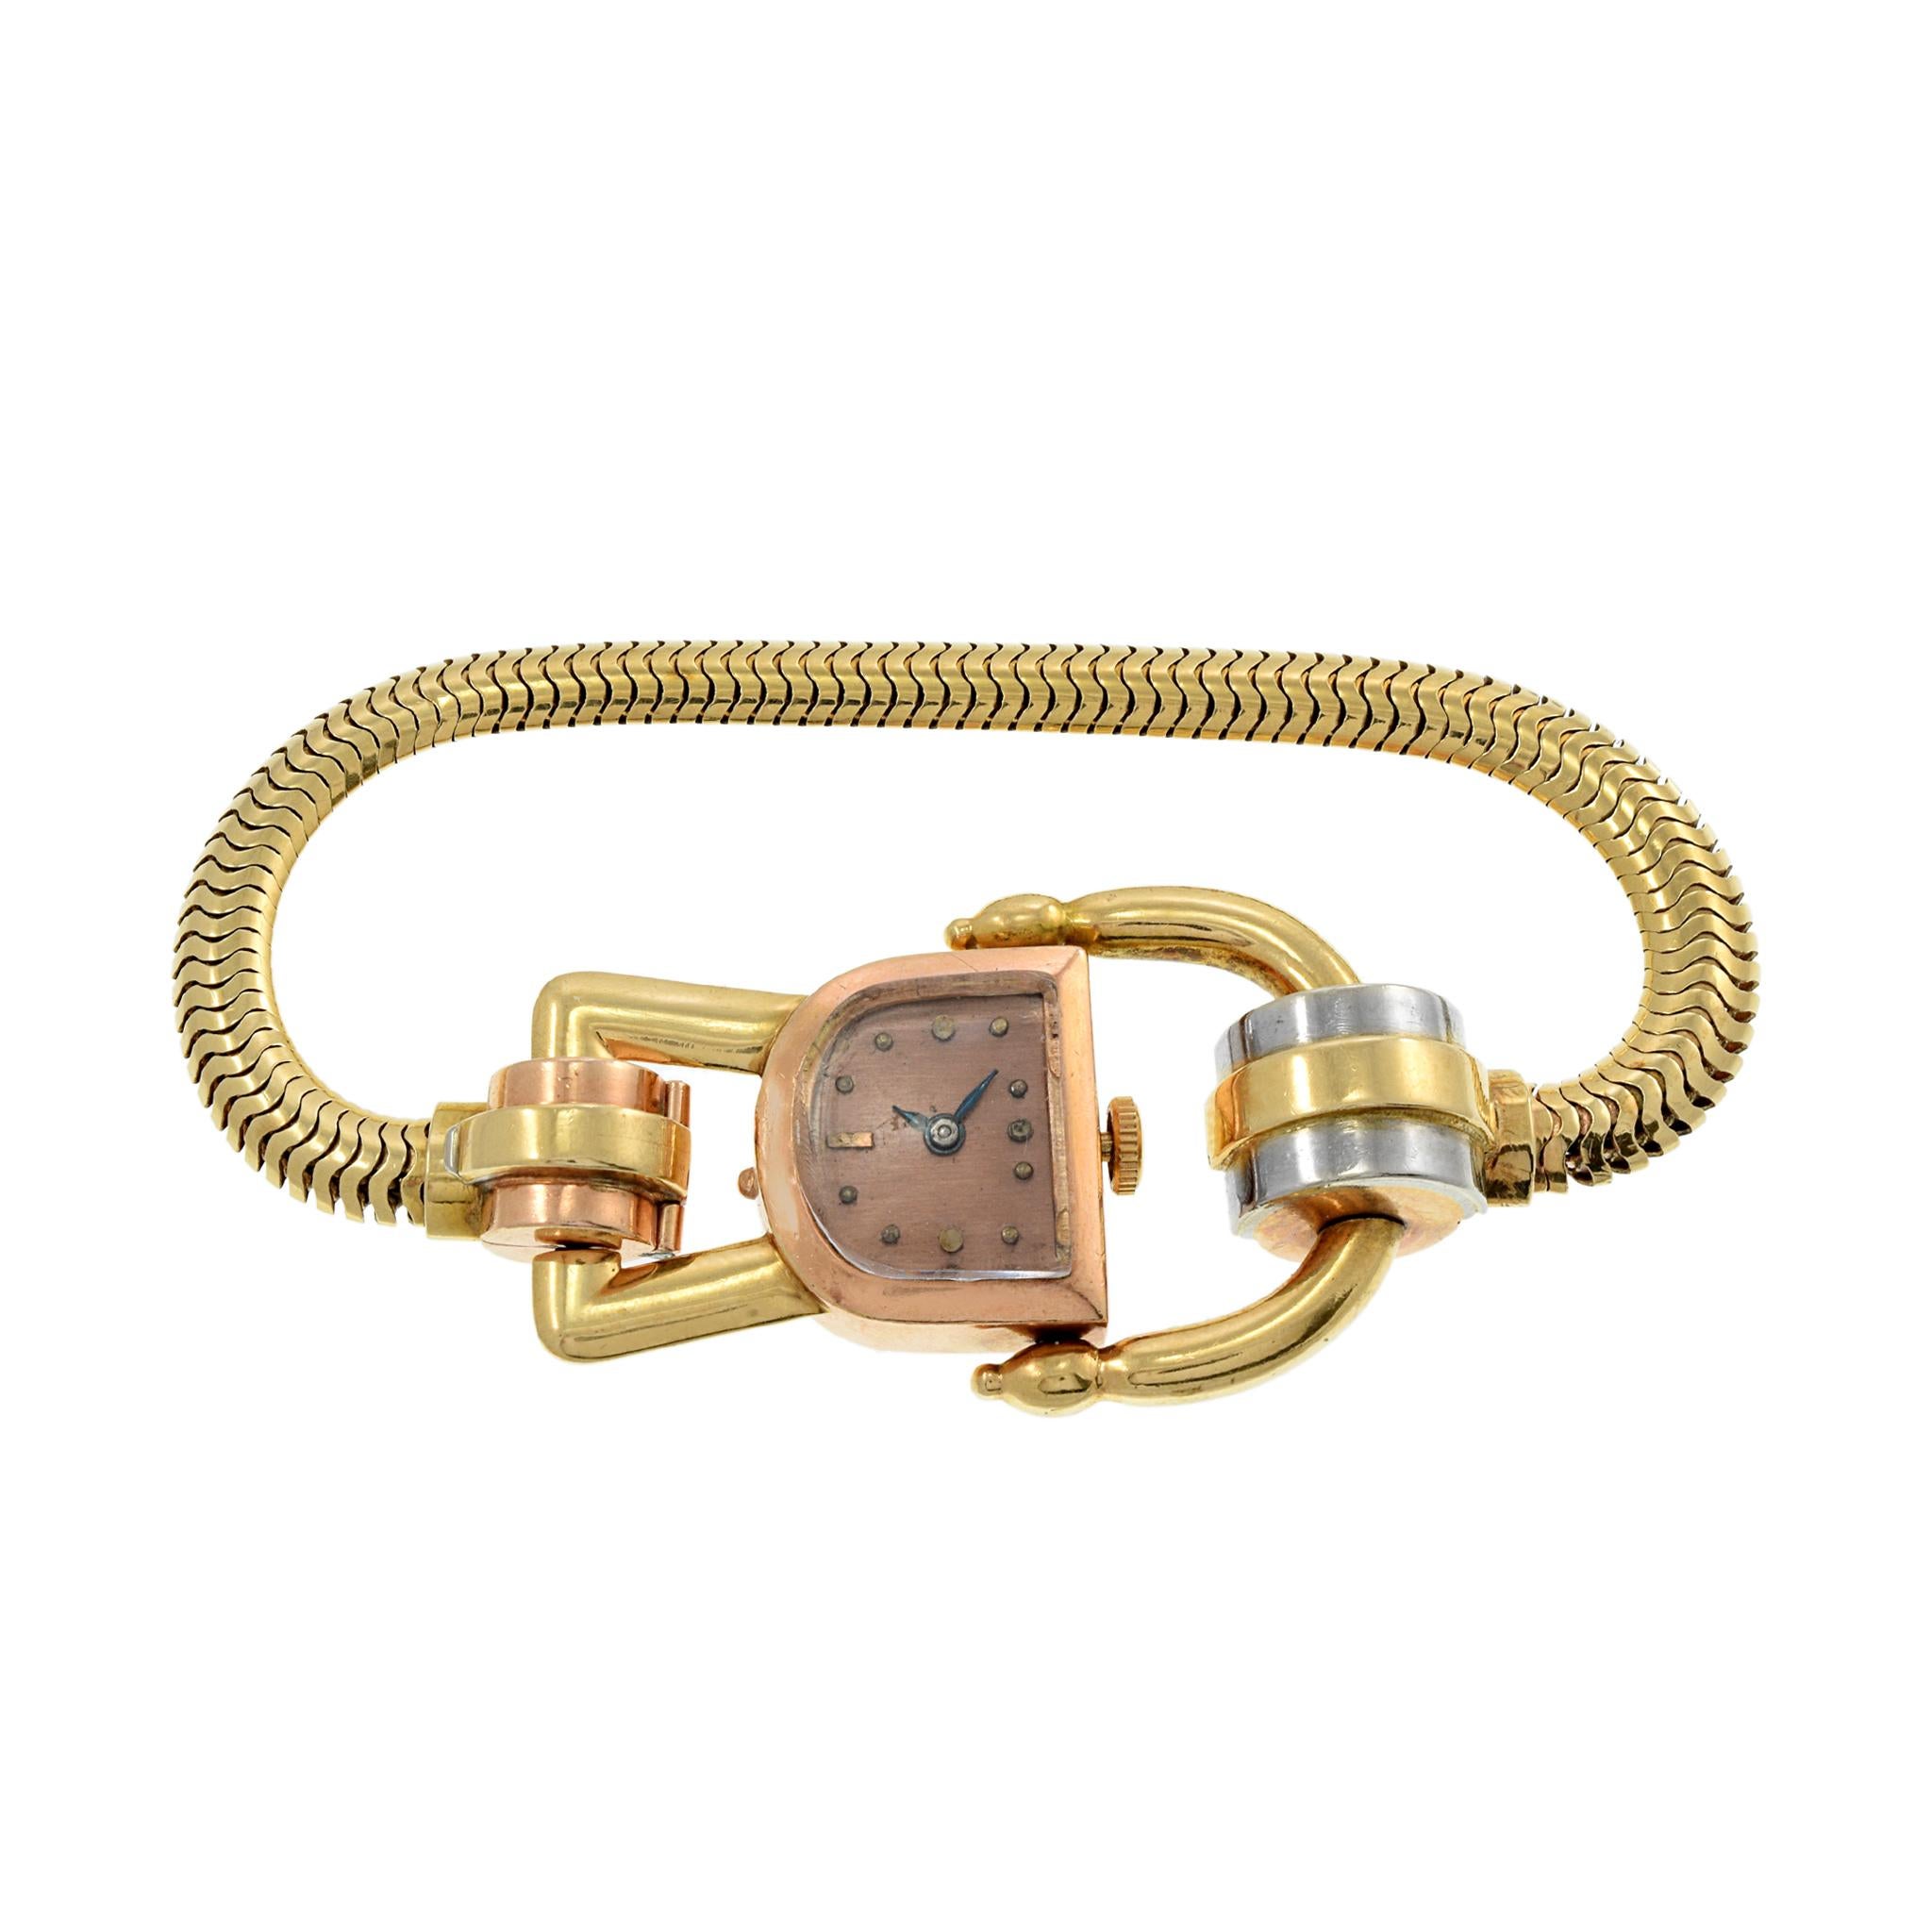 Voici une très belle montre cocktail Jos Boillat en or 18 carats tri-couleurs. Cette montre mesure 17 mm sur 11 mm et se porte mieux grâce à son boîtier et son bracelet ornés. La montre est animée par un mouvement à remontage manuel de 17 rubis. La